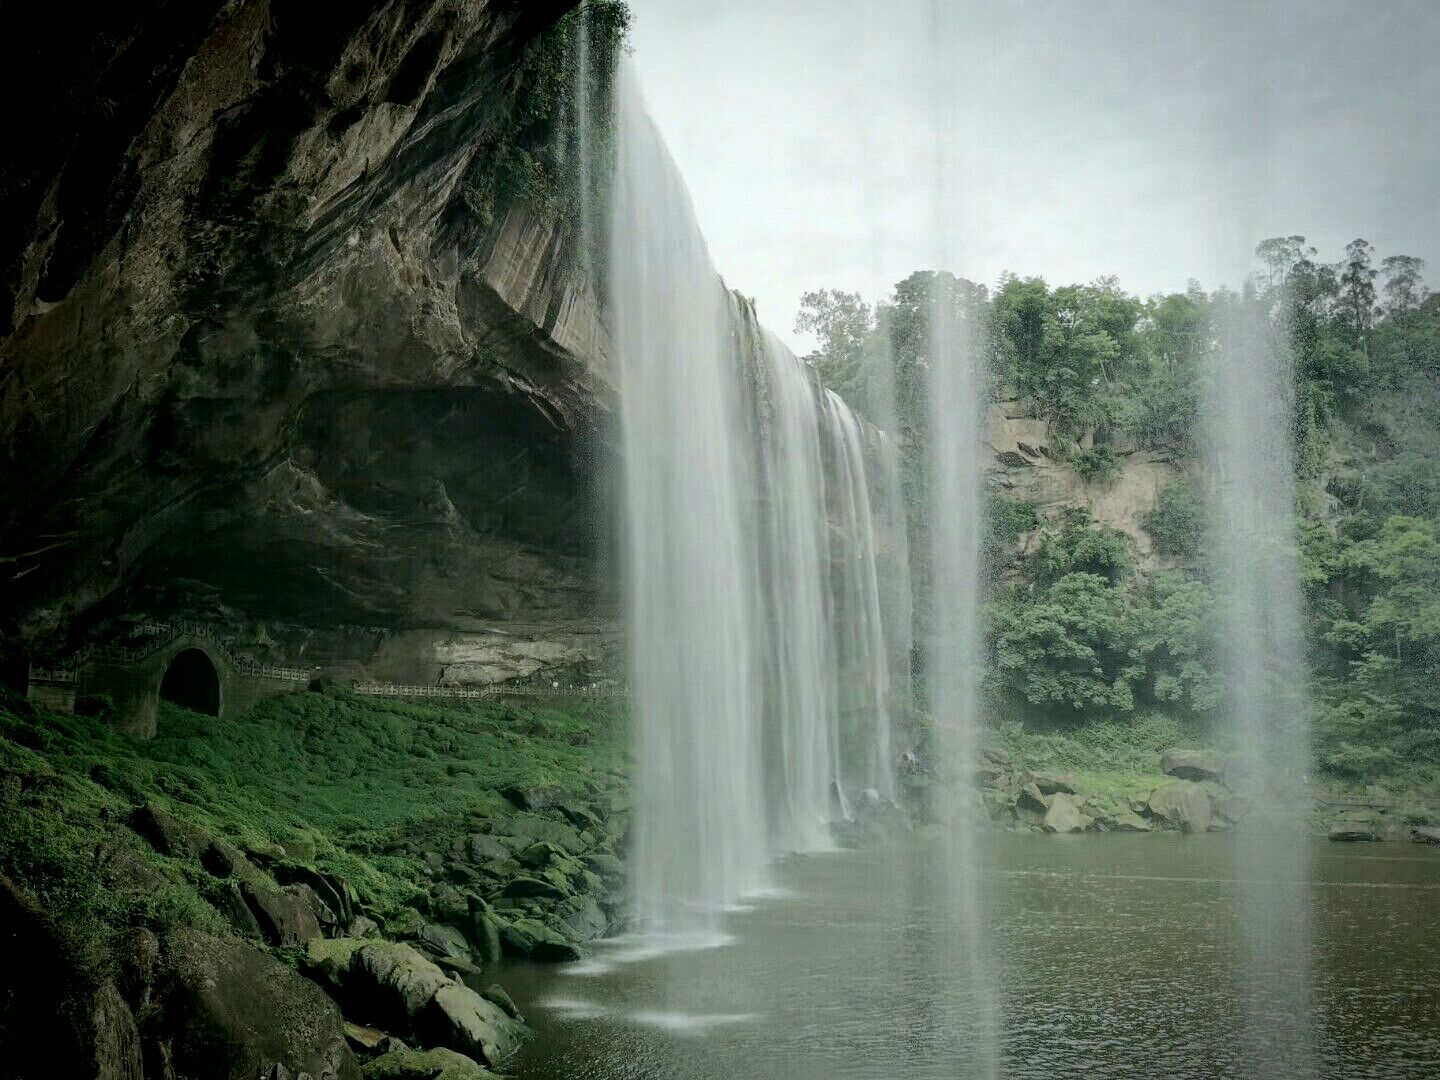 【携程攻略】重庆万州大瀑布景点,万州大瀑布景区景色非常的美，瀑布的水流飞泻而下非常壮观。除了自然…